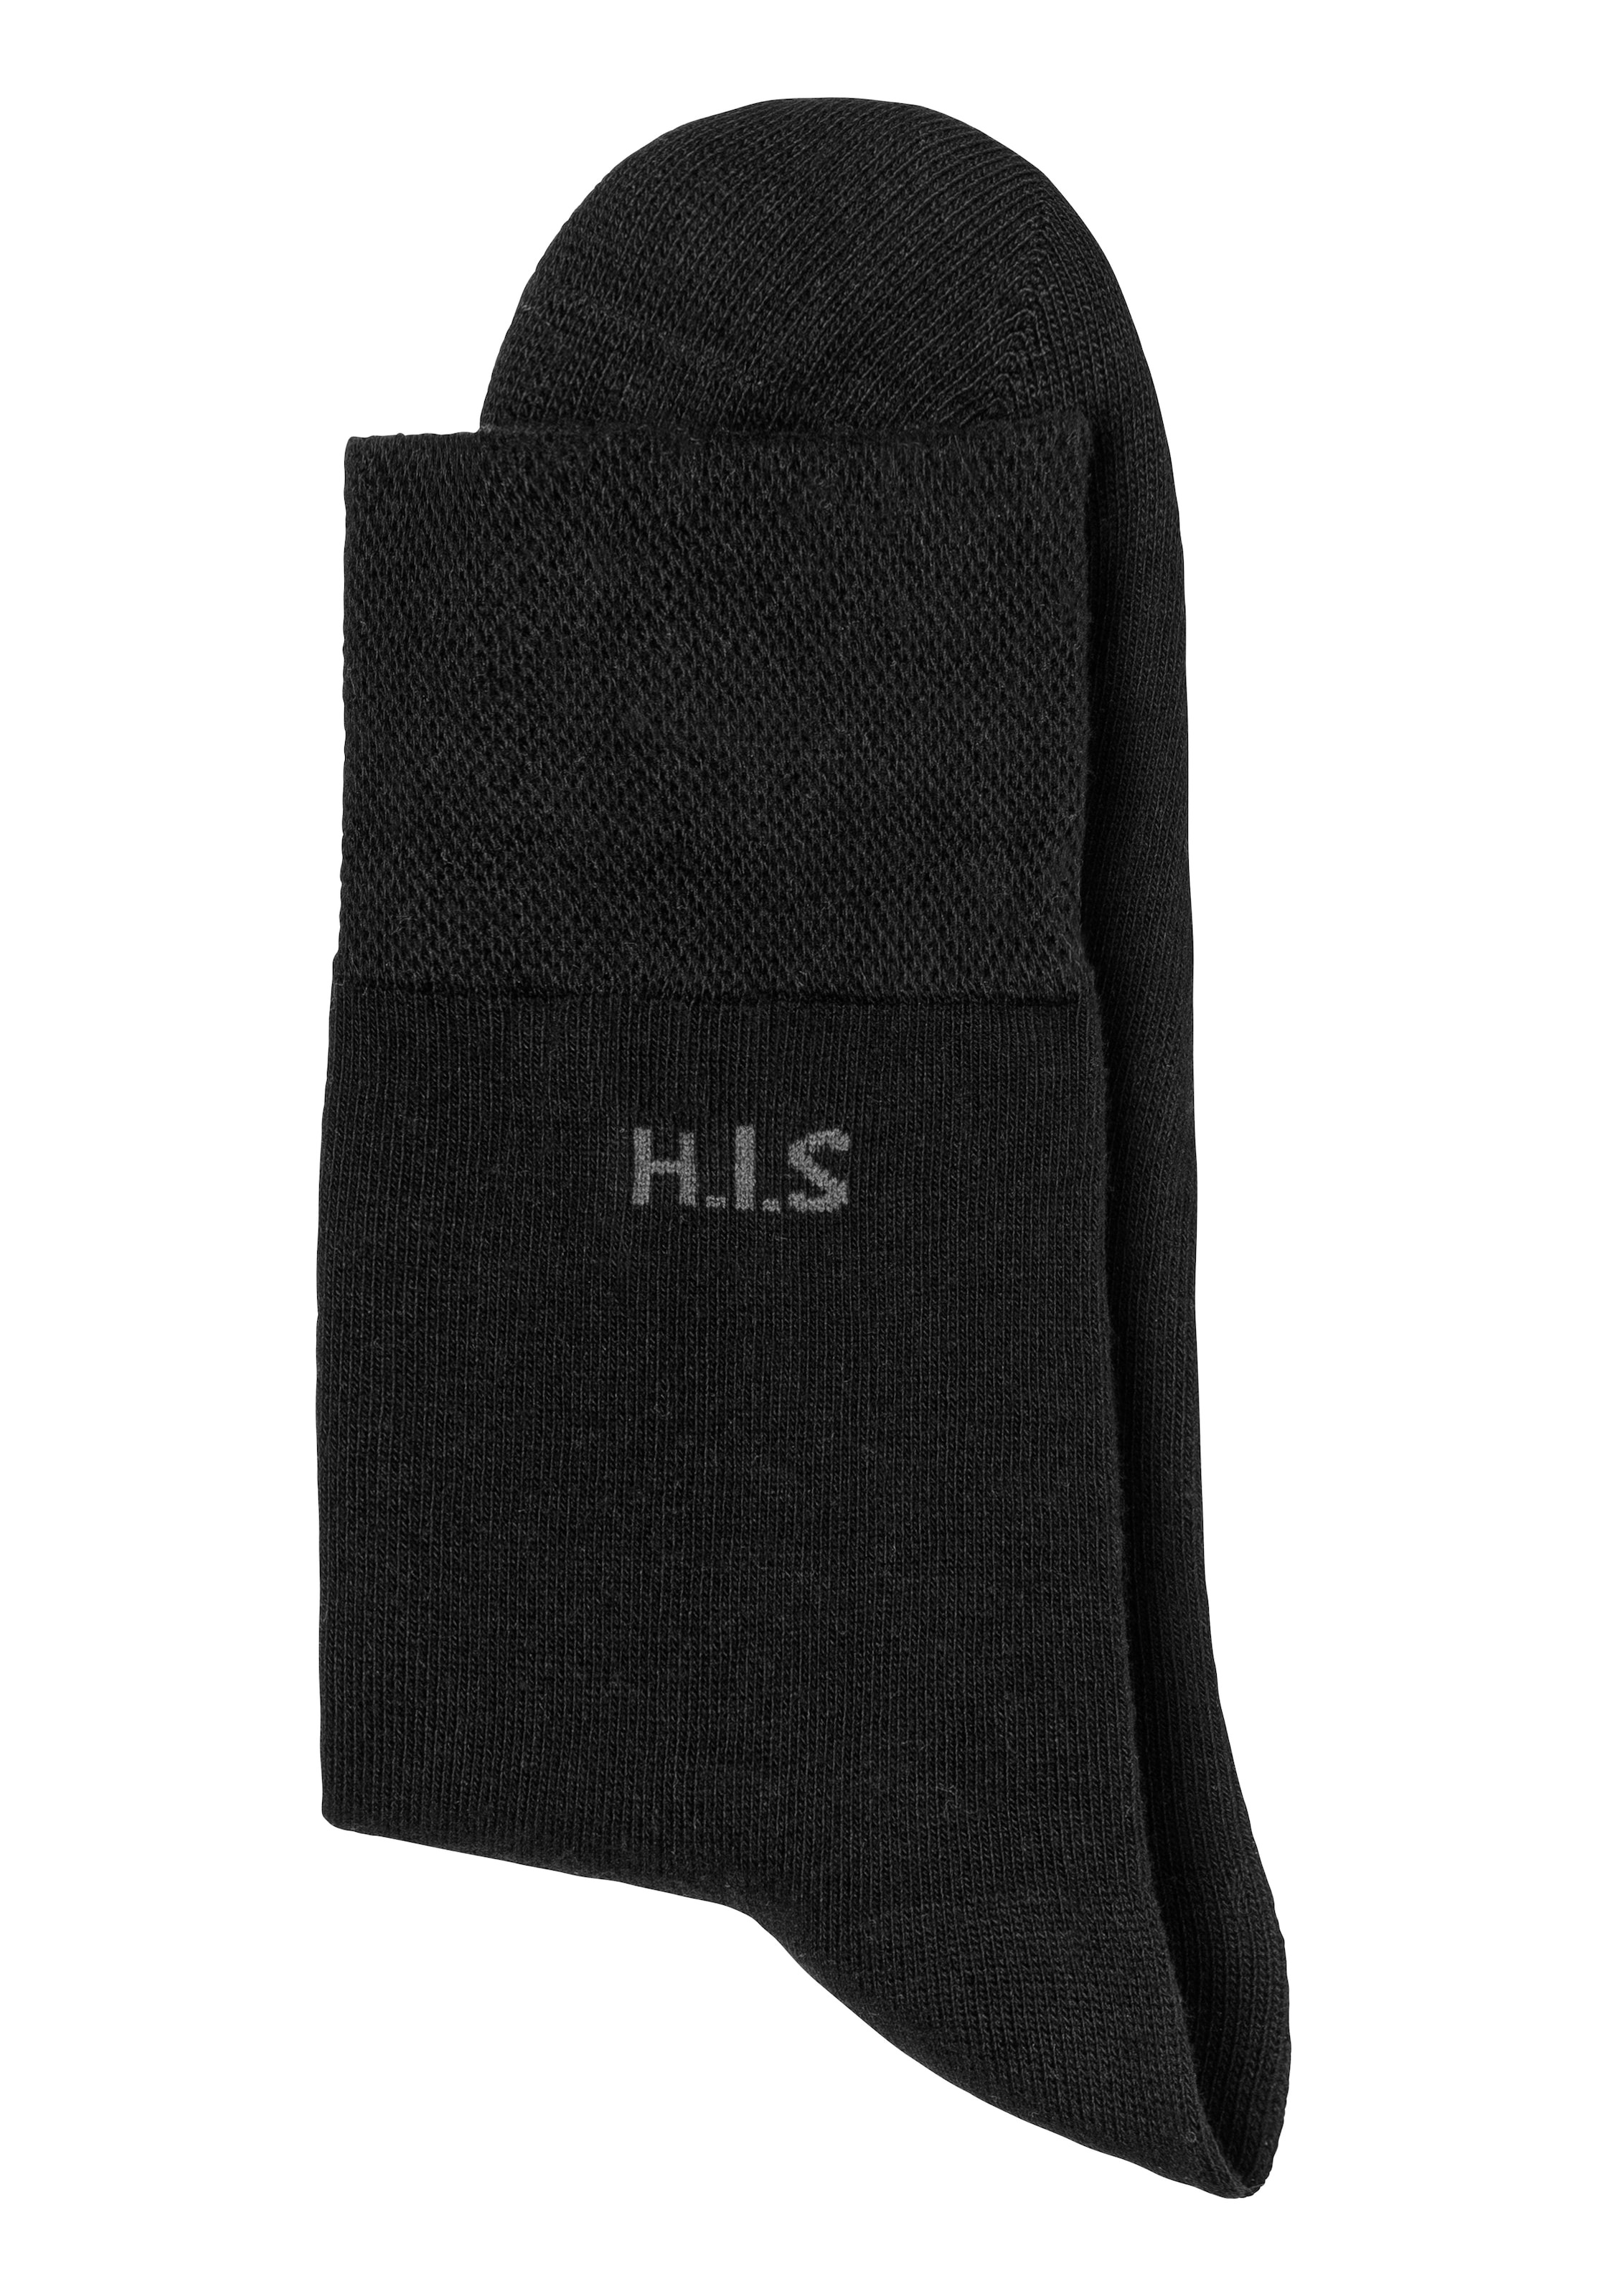 H.I.S Socken, (Packung, 12 Paar), einschneidendes kaufen ohne online Gummi